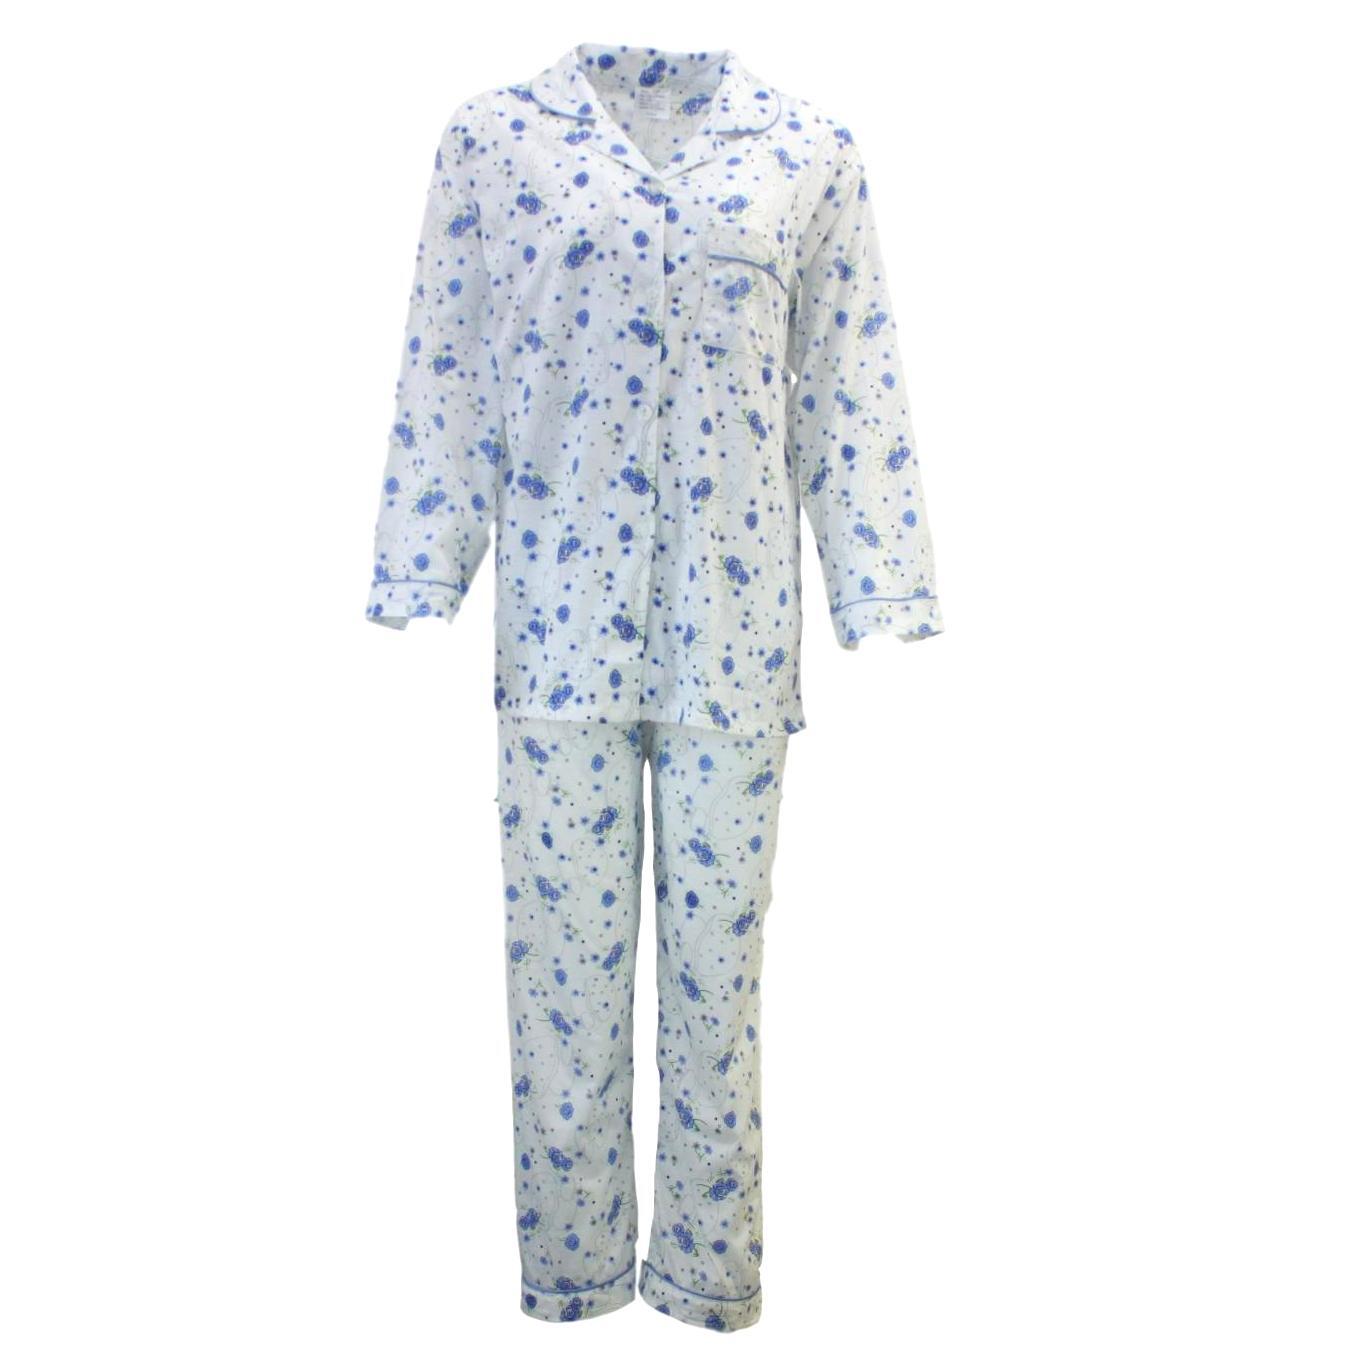 Women's Ladies Longsleeve Cotton Pajamas Pyjamas PJ Set Sleepwear | eBay